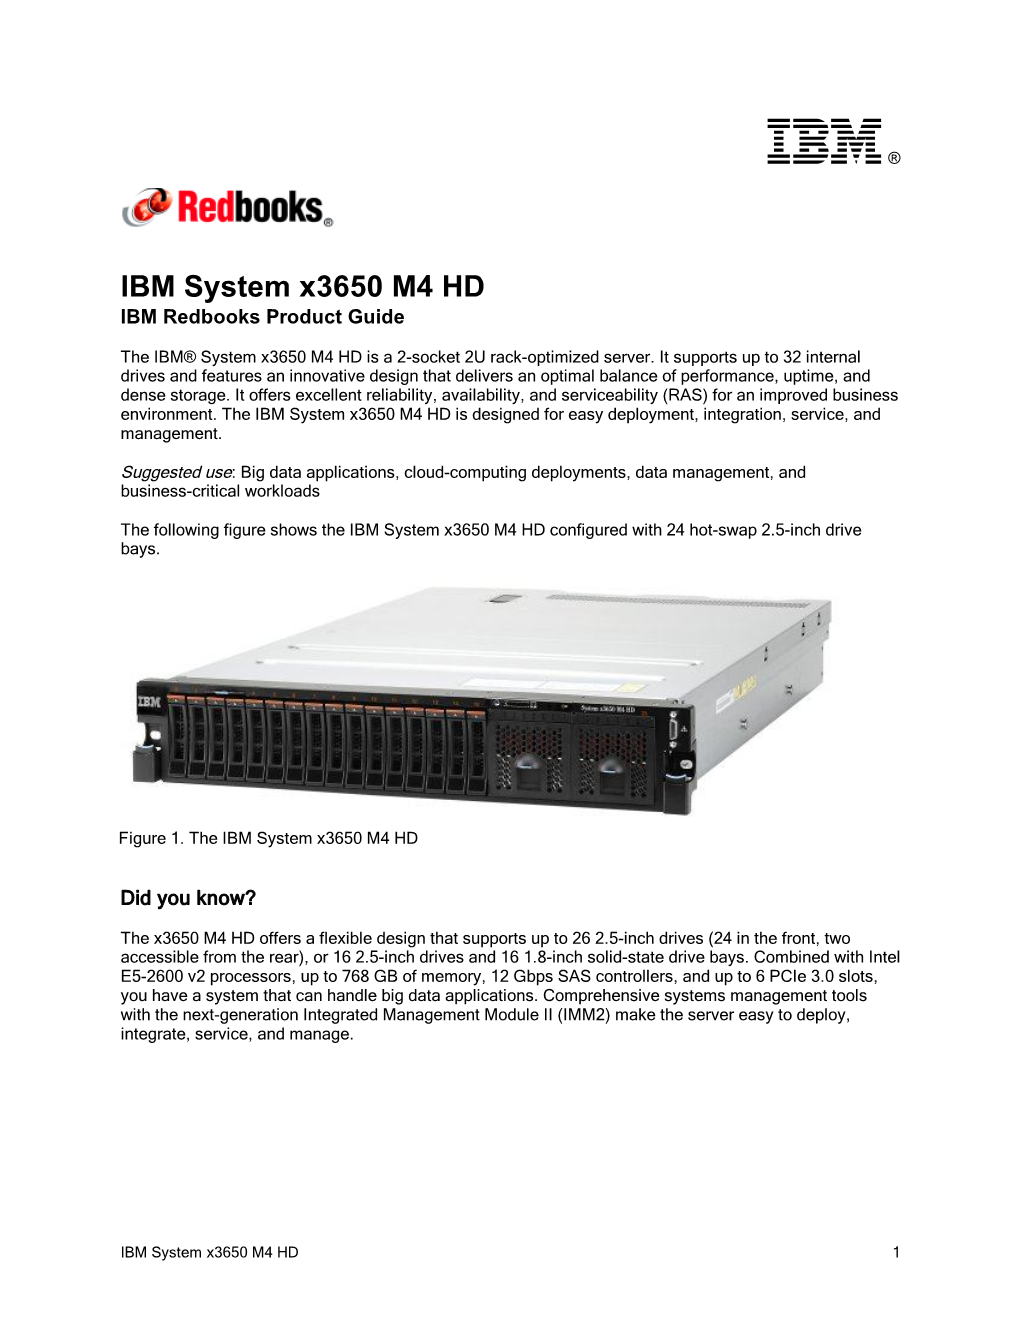 IBM System X3650 M4 HD IBM Redbooks Product Guide